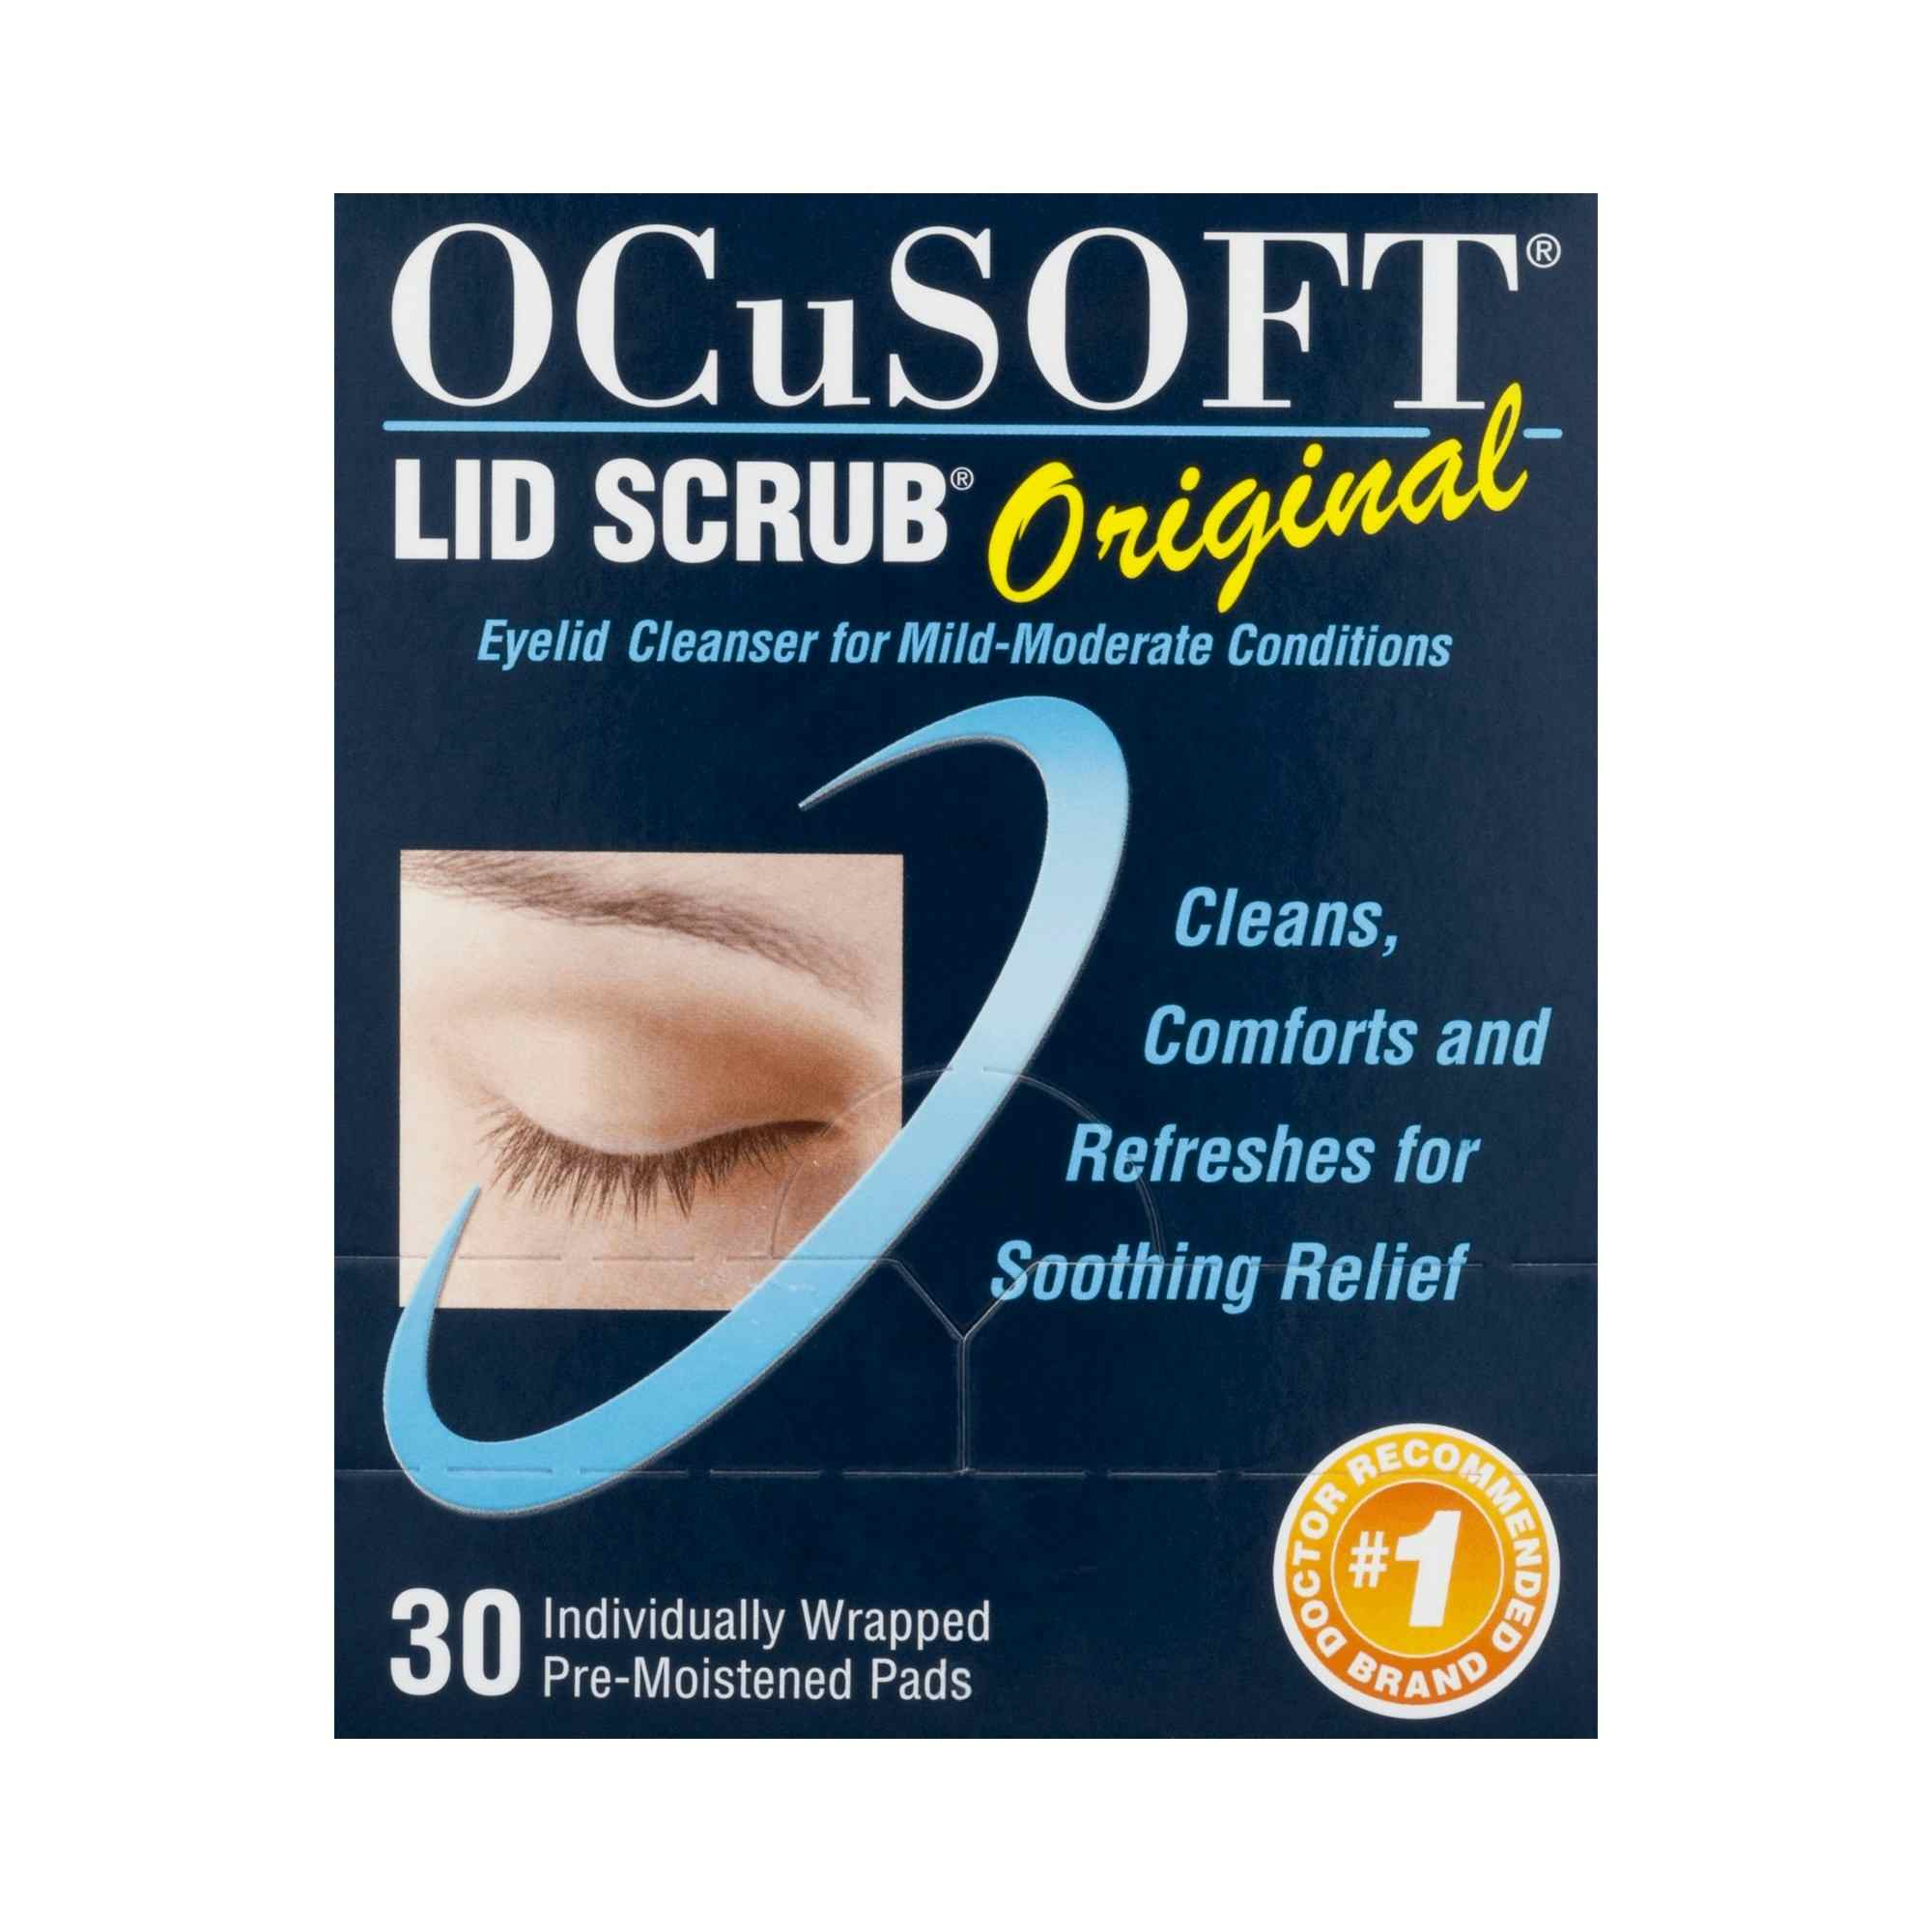 OCuSOFT Lid Scrub Eyelid Cleanser Wipes